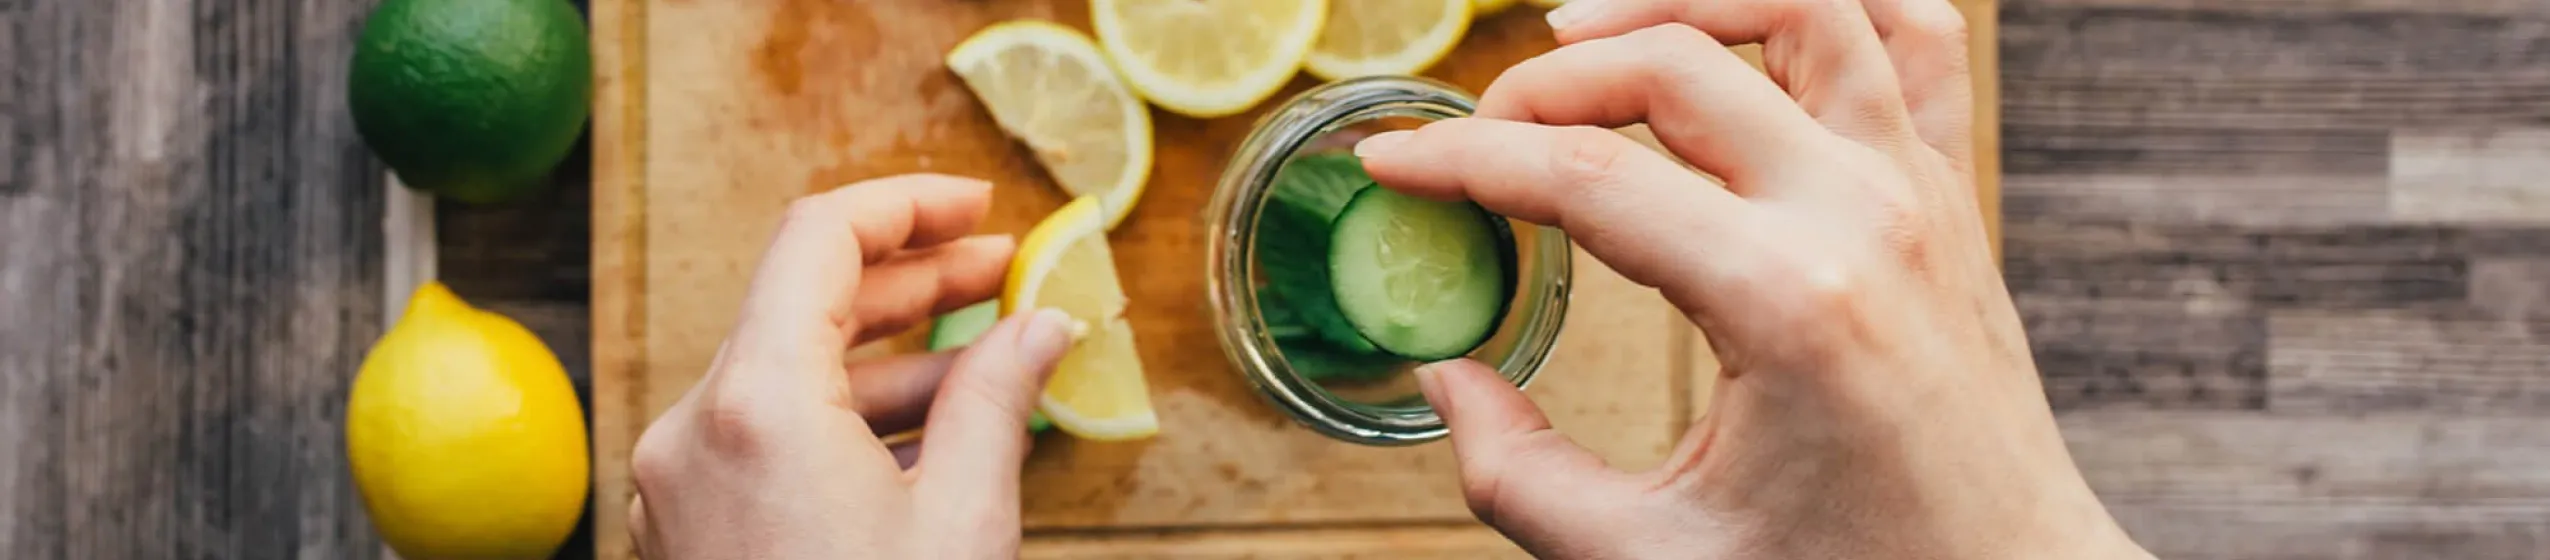 Entschlackung: Zitrone und Gurkenscheiben in einem Wasserglas